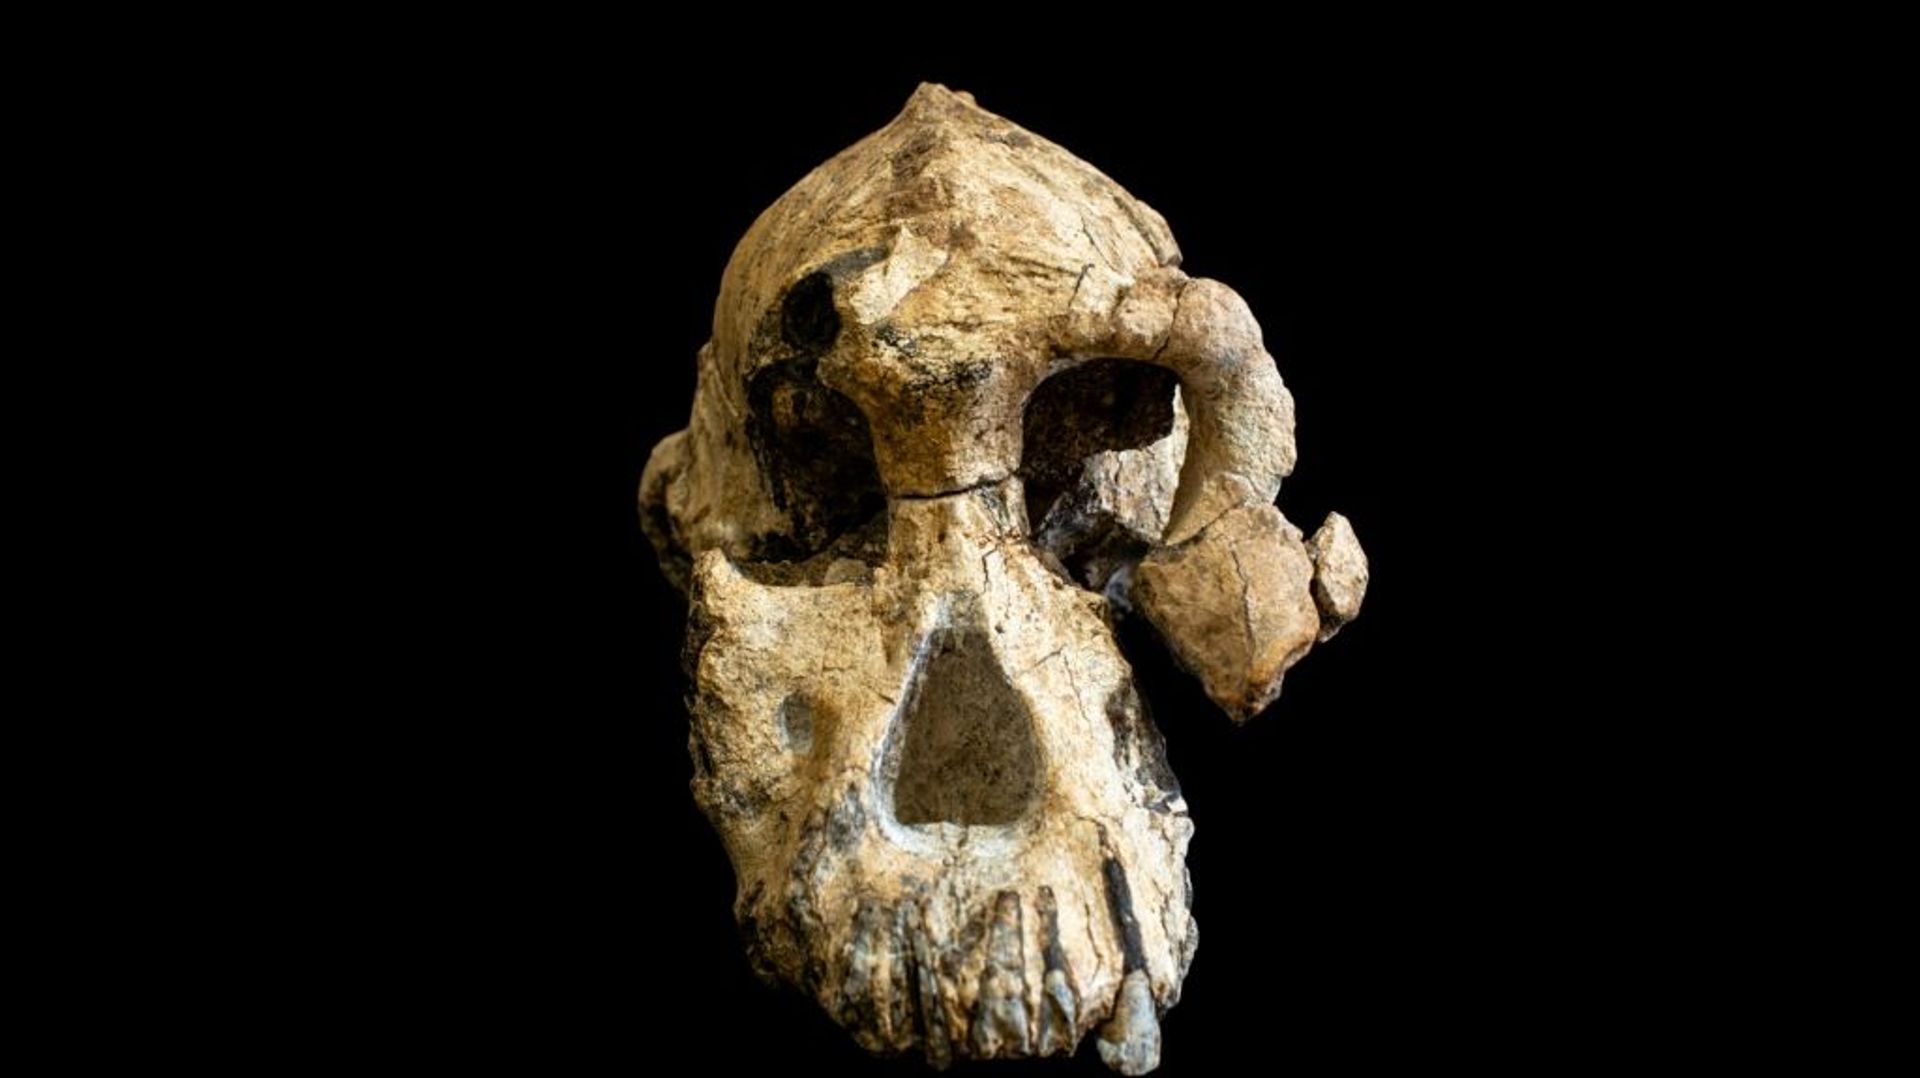 Ce crâne vieux de 3,8 millions d'années découvert en Ethiopie pourrait  devenir une « icône de l'évolution humaine »